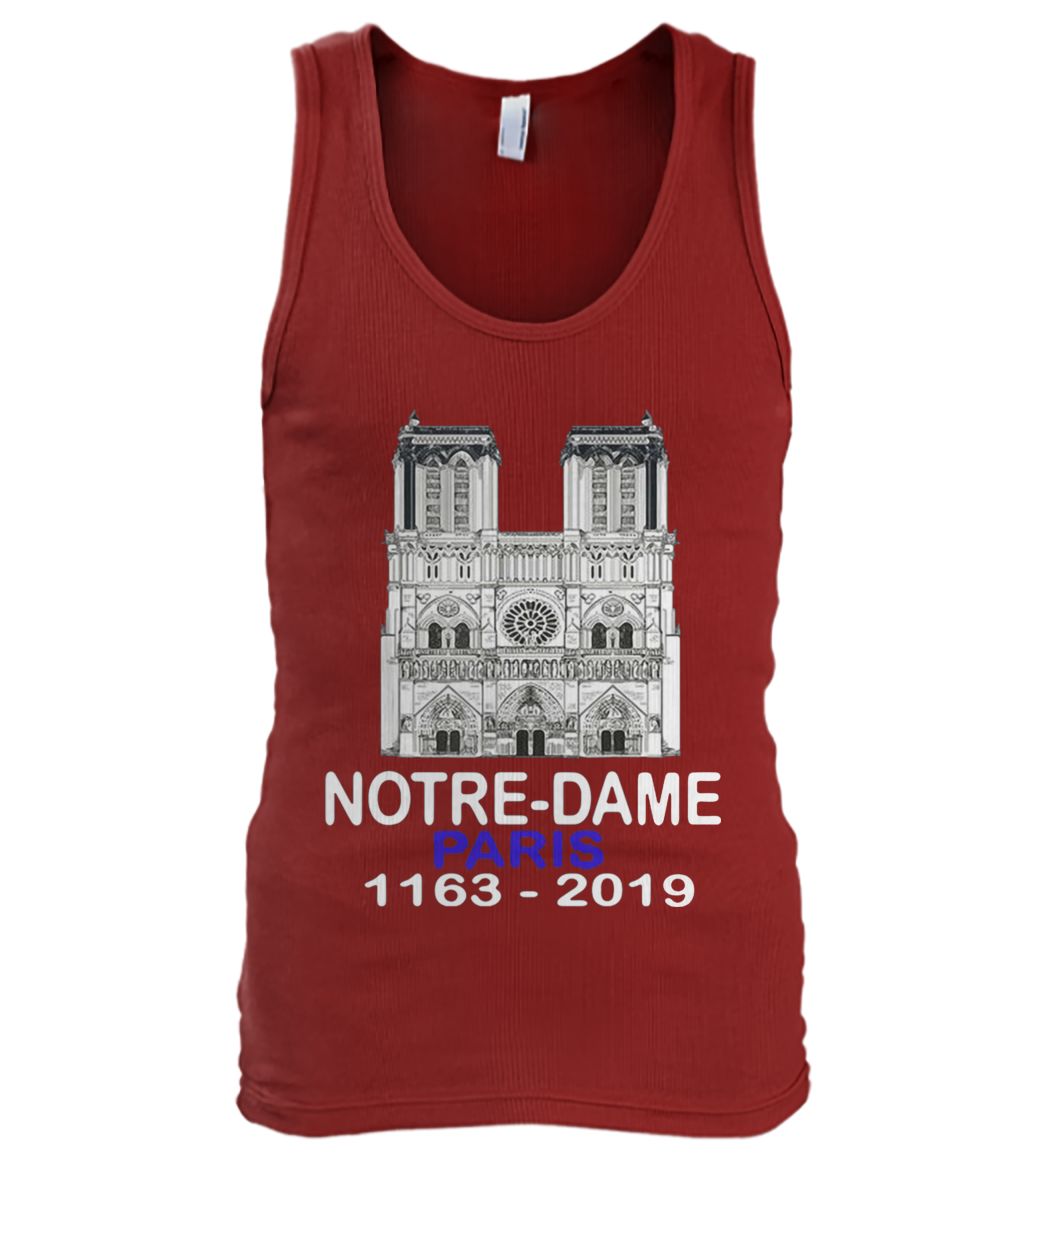 Remember notre-dame paris 1163-2019 men's tank top